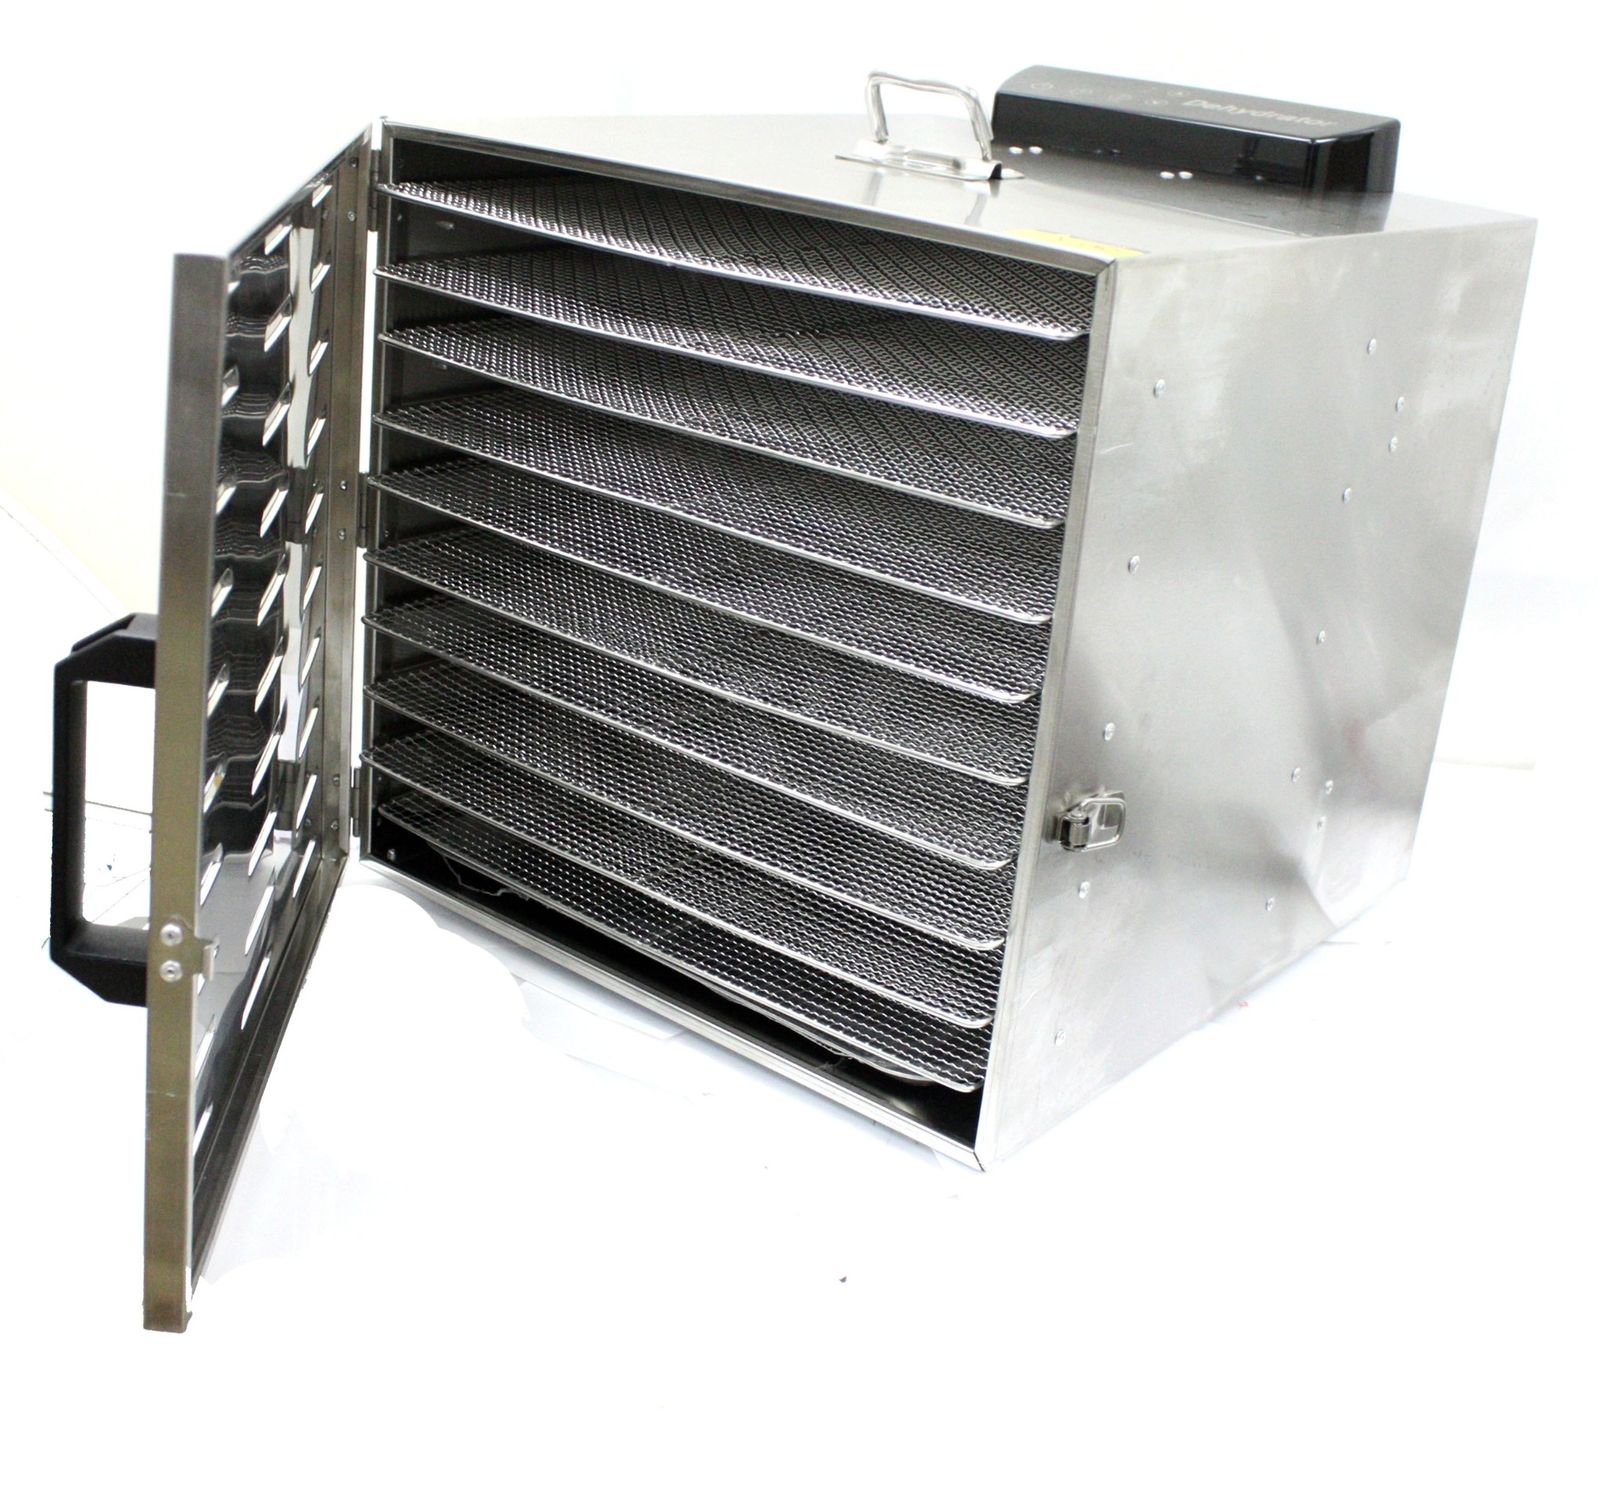 VEVOR Food Dehydrator Machine, 10 Stainless Steel Trays, 1000W